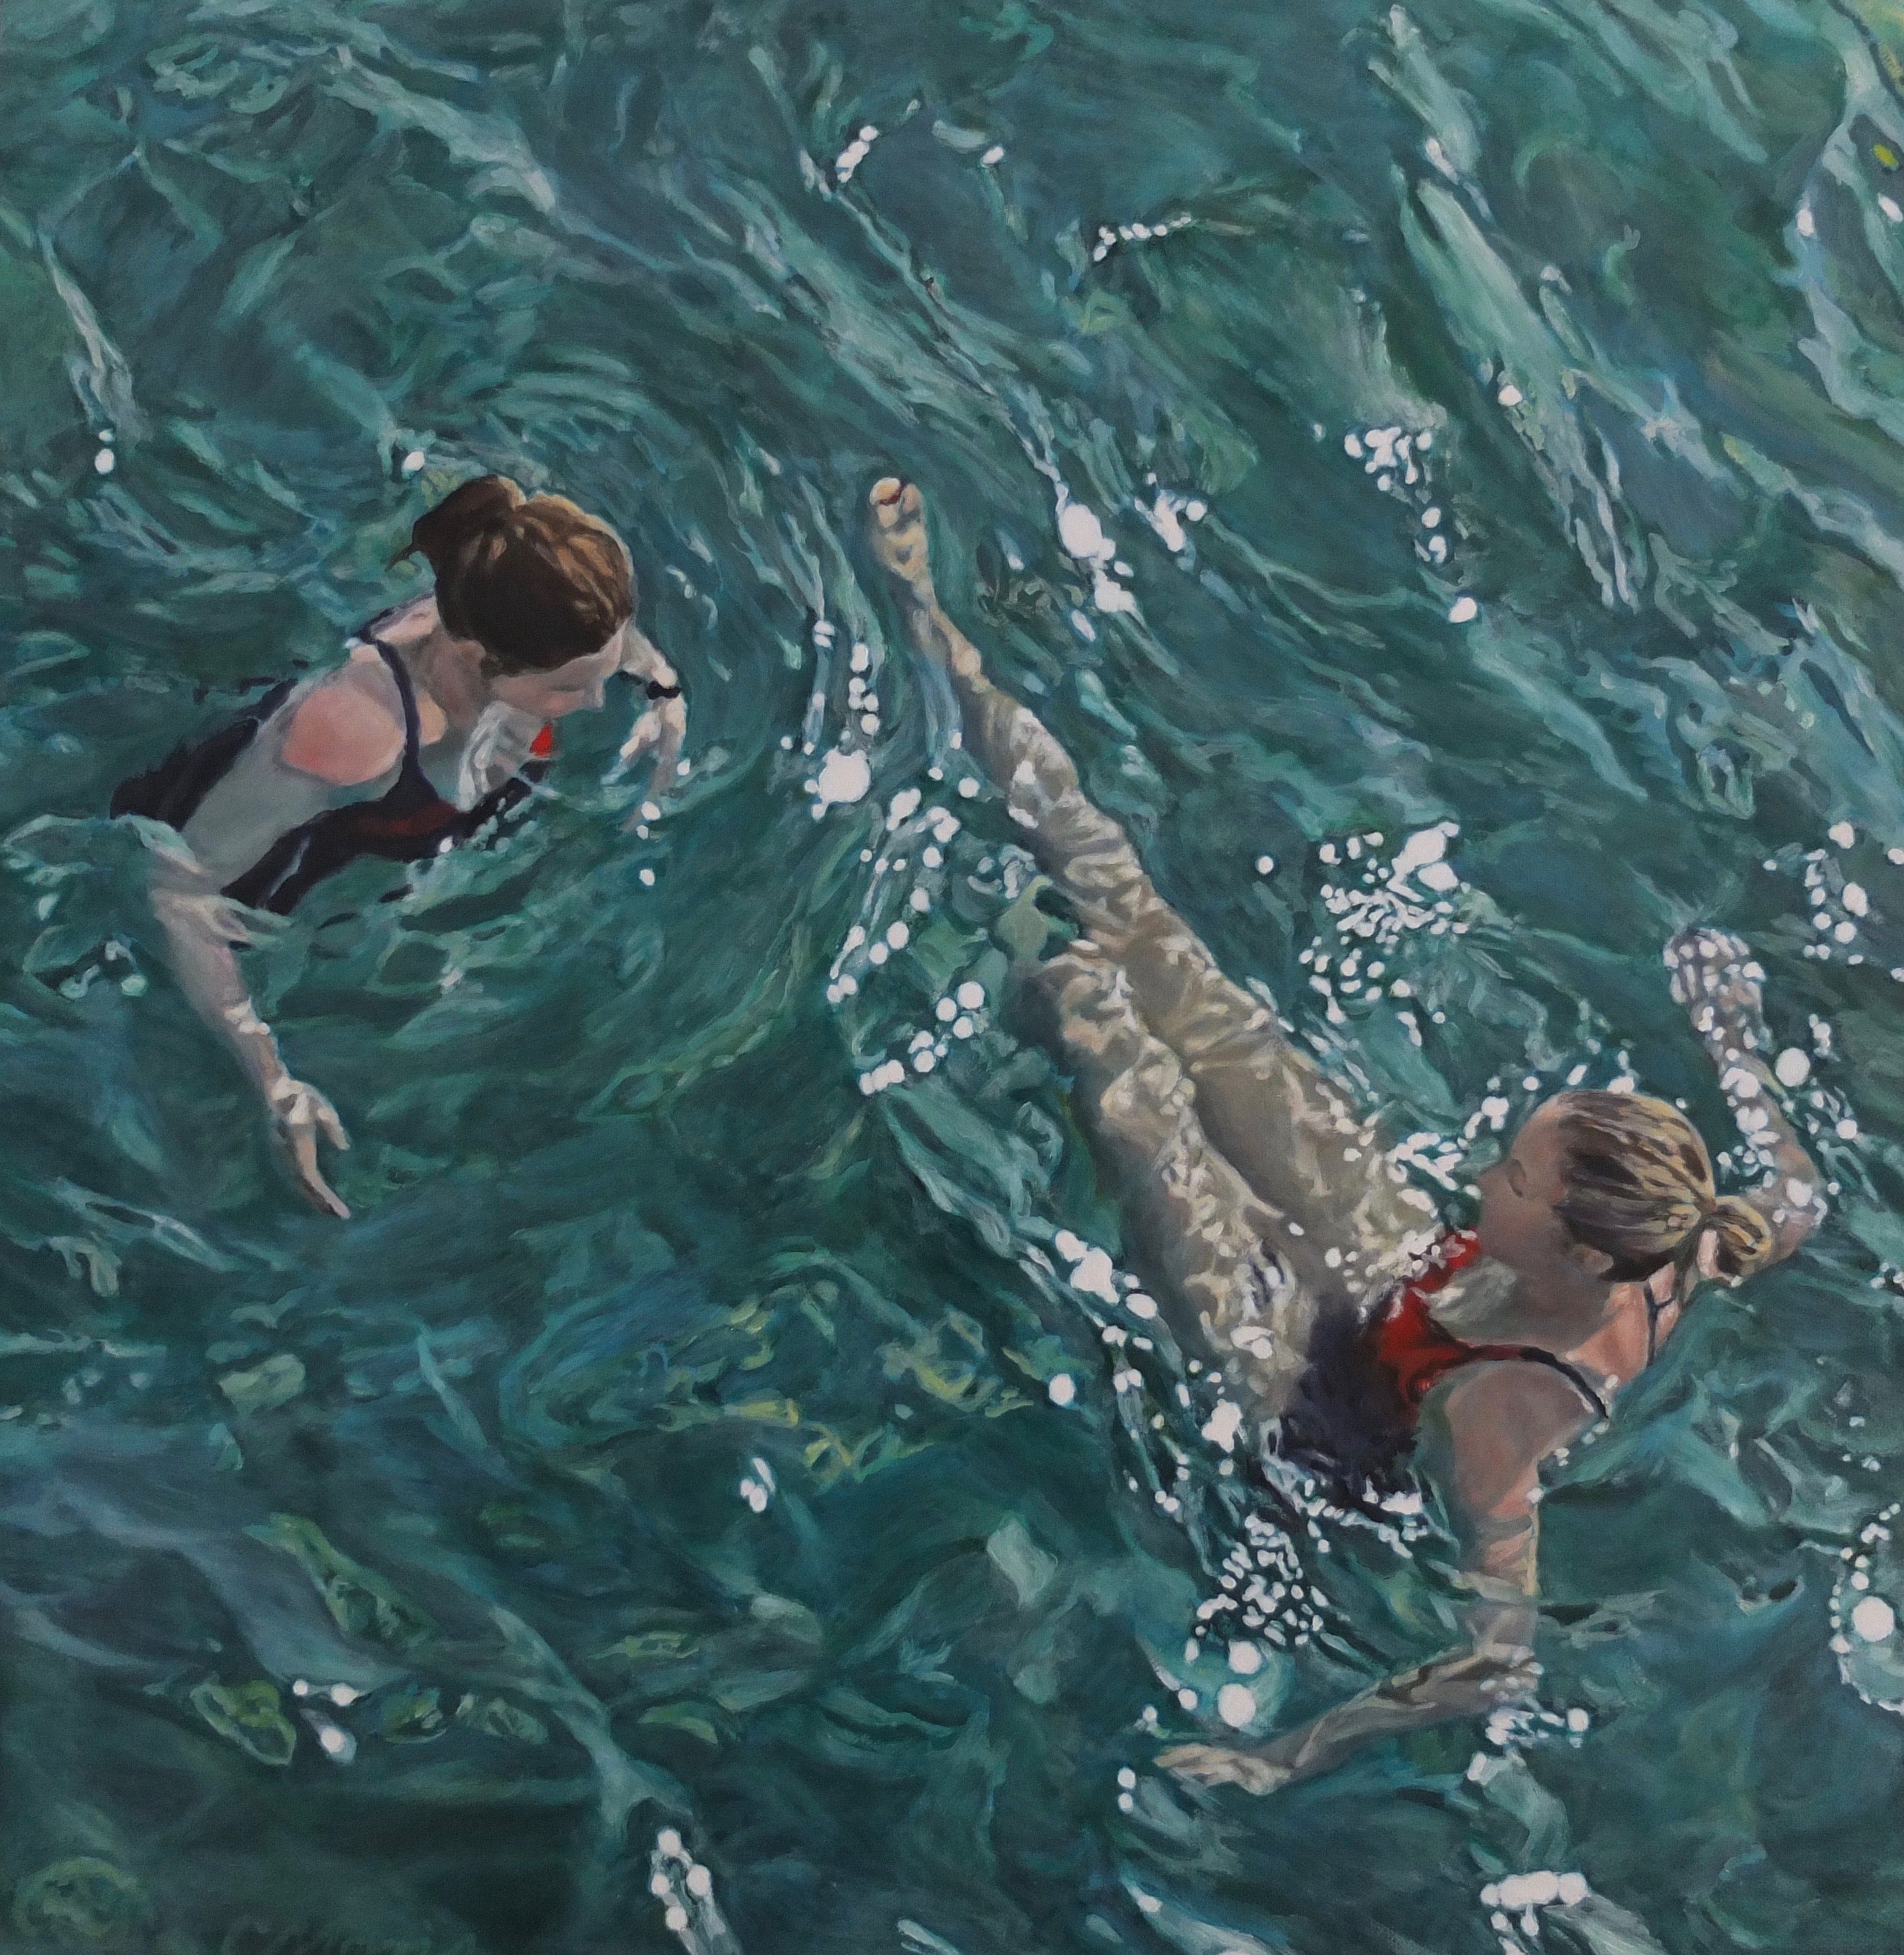 Conversation Oil on canvas 51 x 51 cm by Camellia Morris